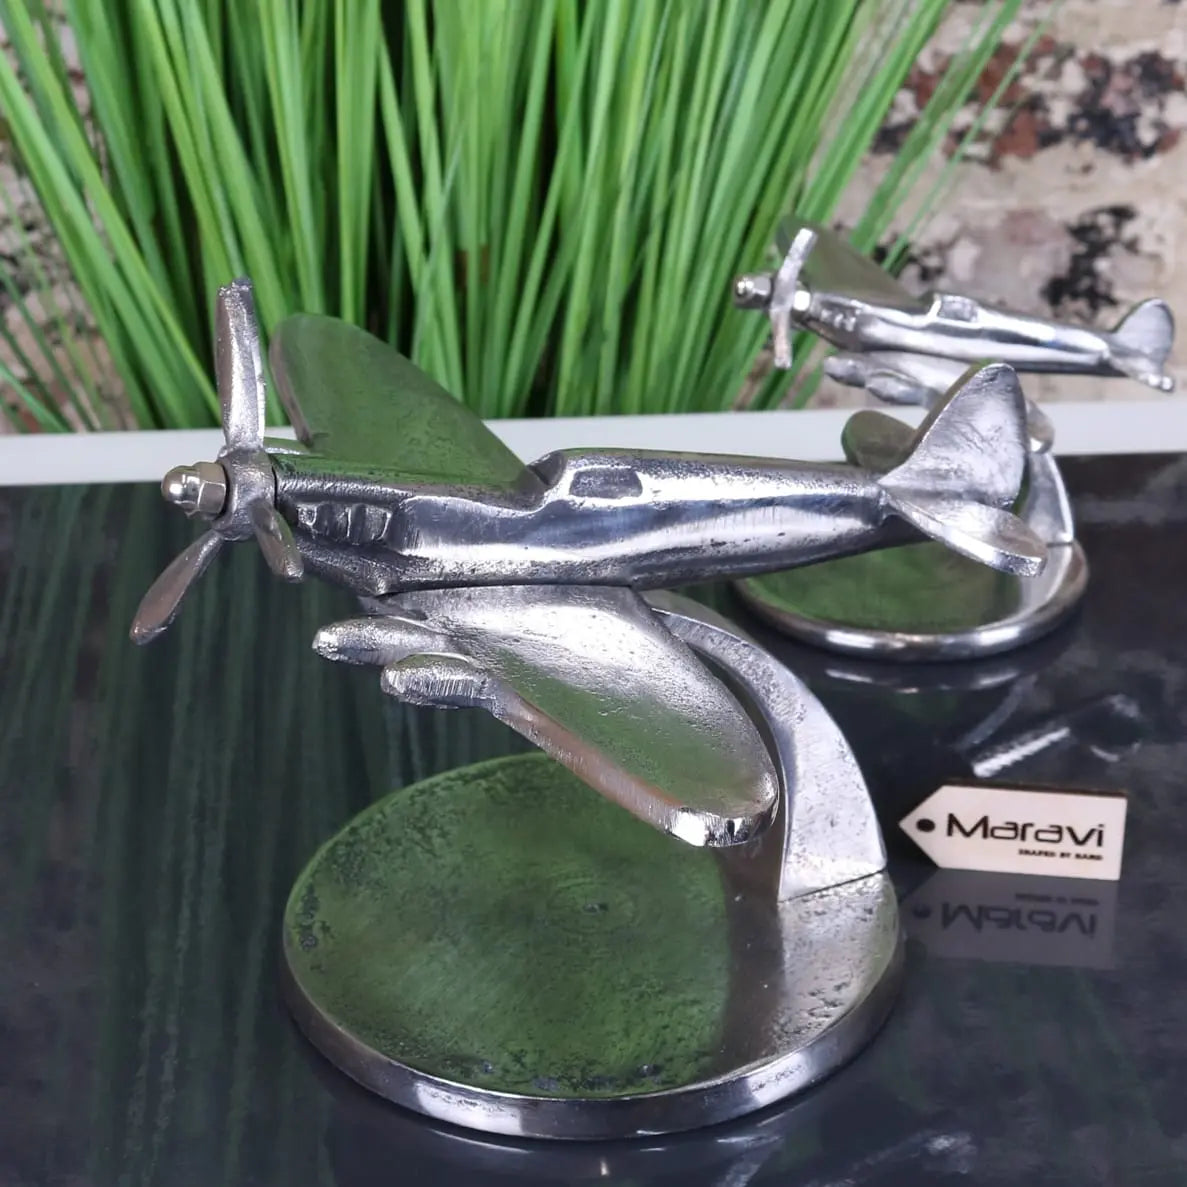 Meghna Spitfire Model Ornaments - Closeup of Large Model